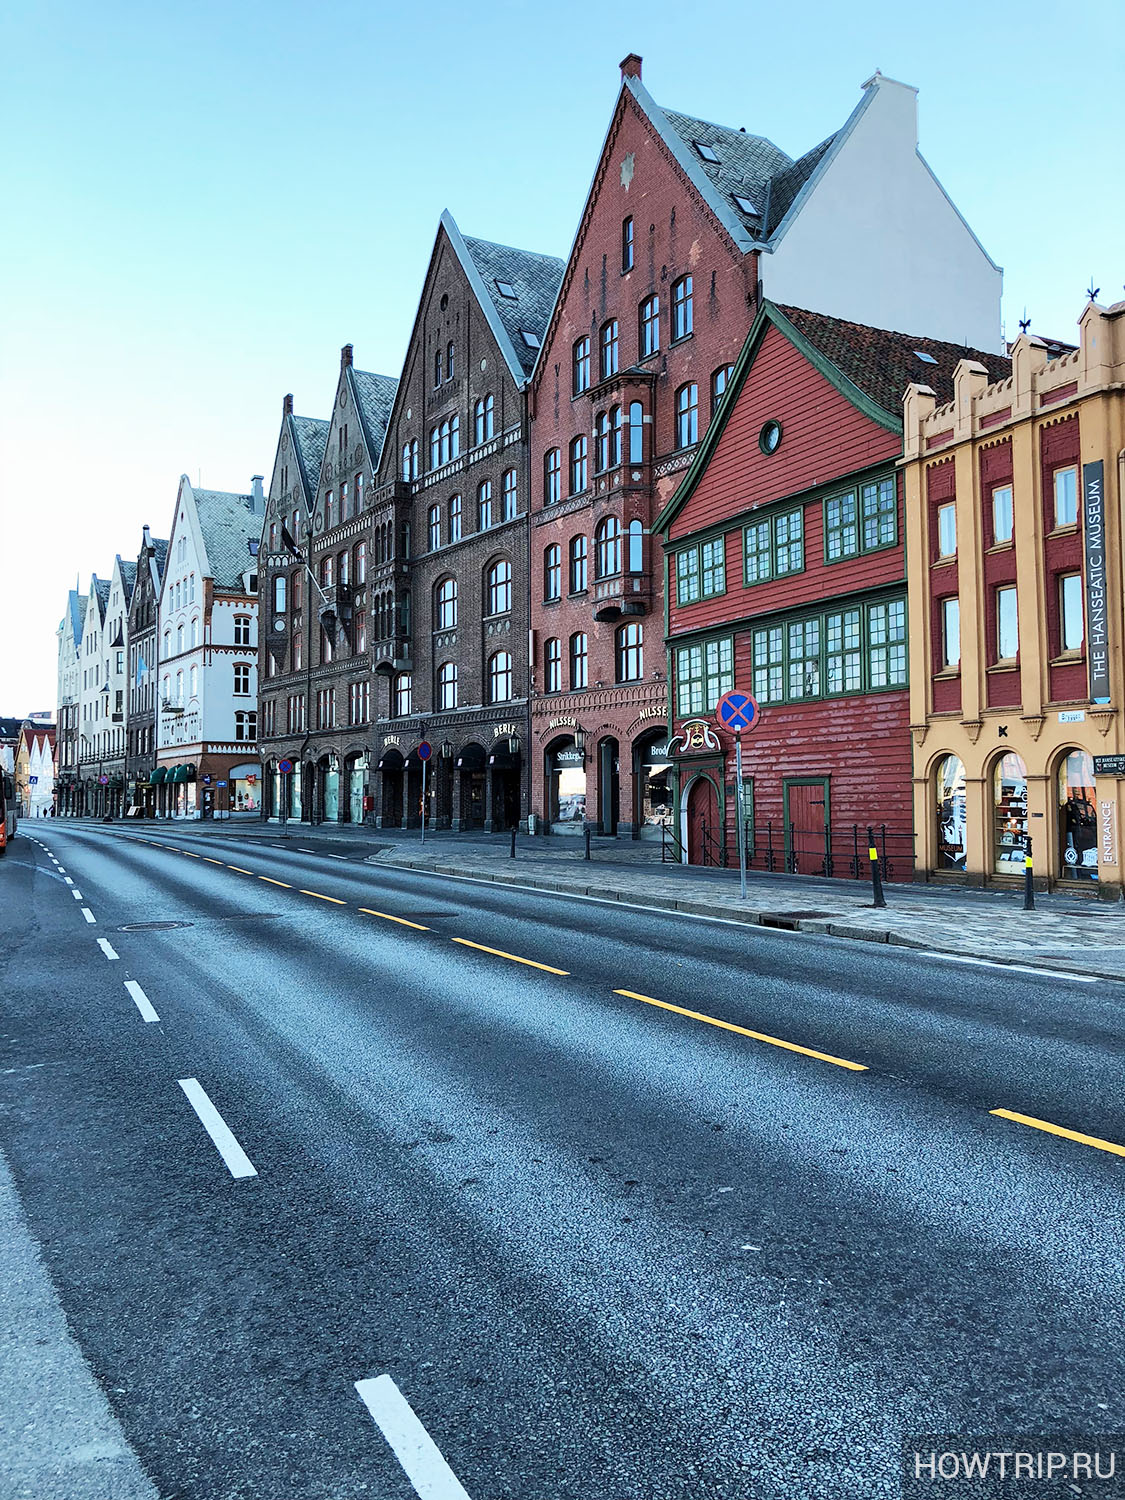 Улица Бергена, Норвегия (наша поездка)